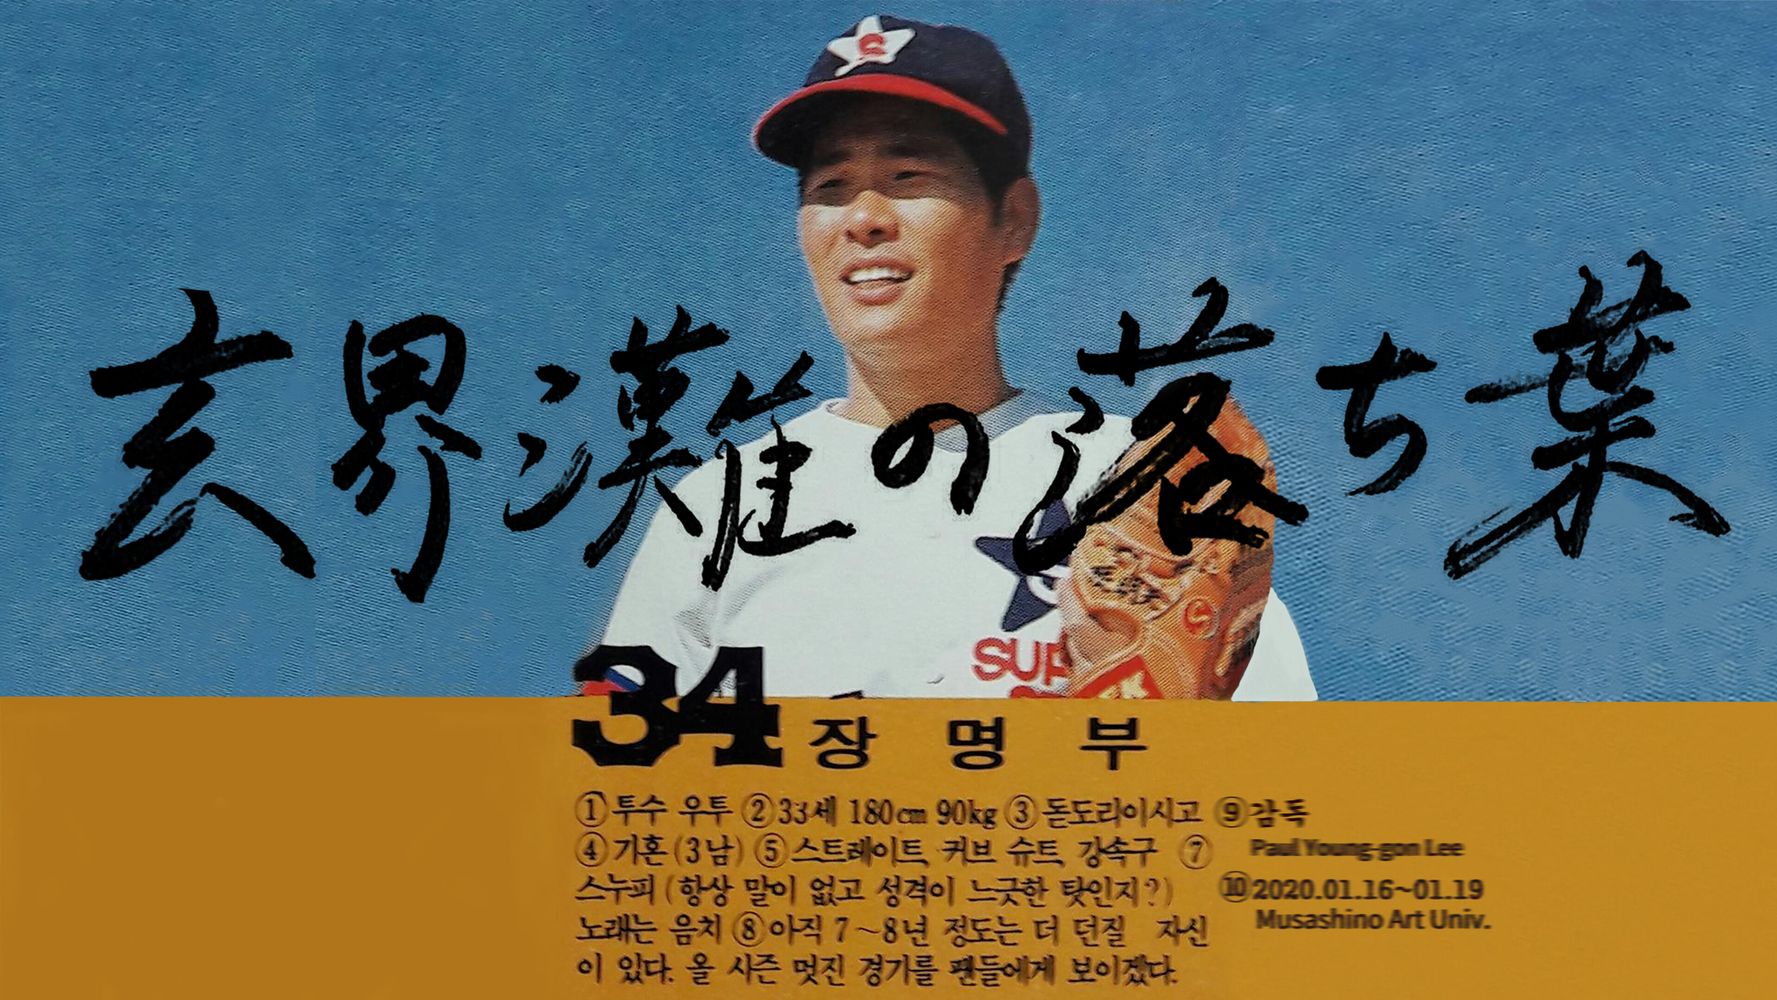 弱小プロ野球チームを支えた悲運のエース 韓国に渡り 燃え尽きた在日コリアン選手を追った映画 ハフポスト